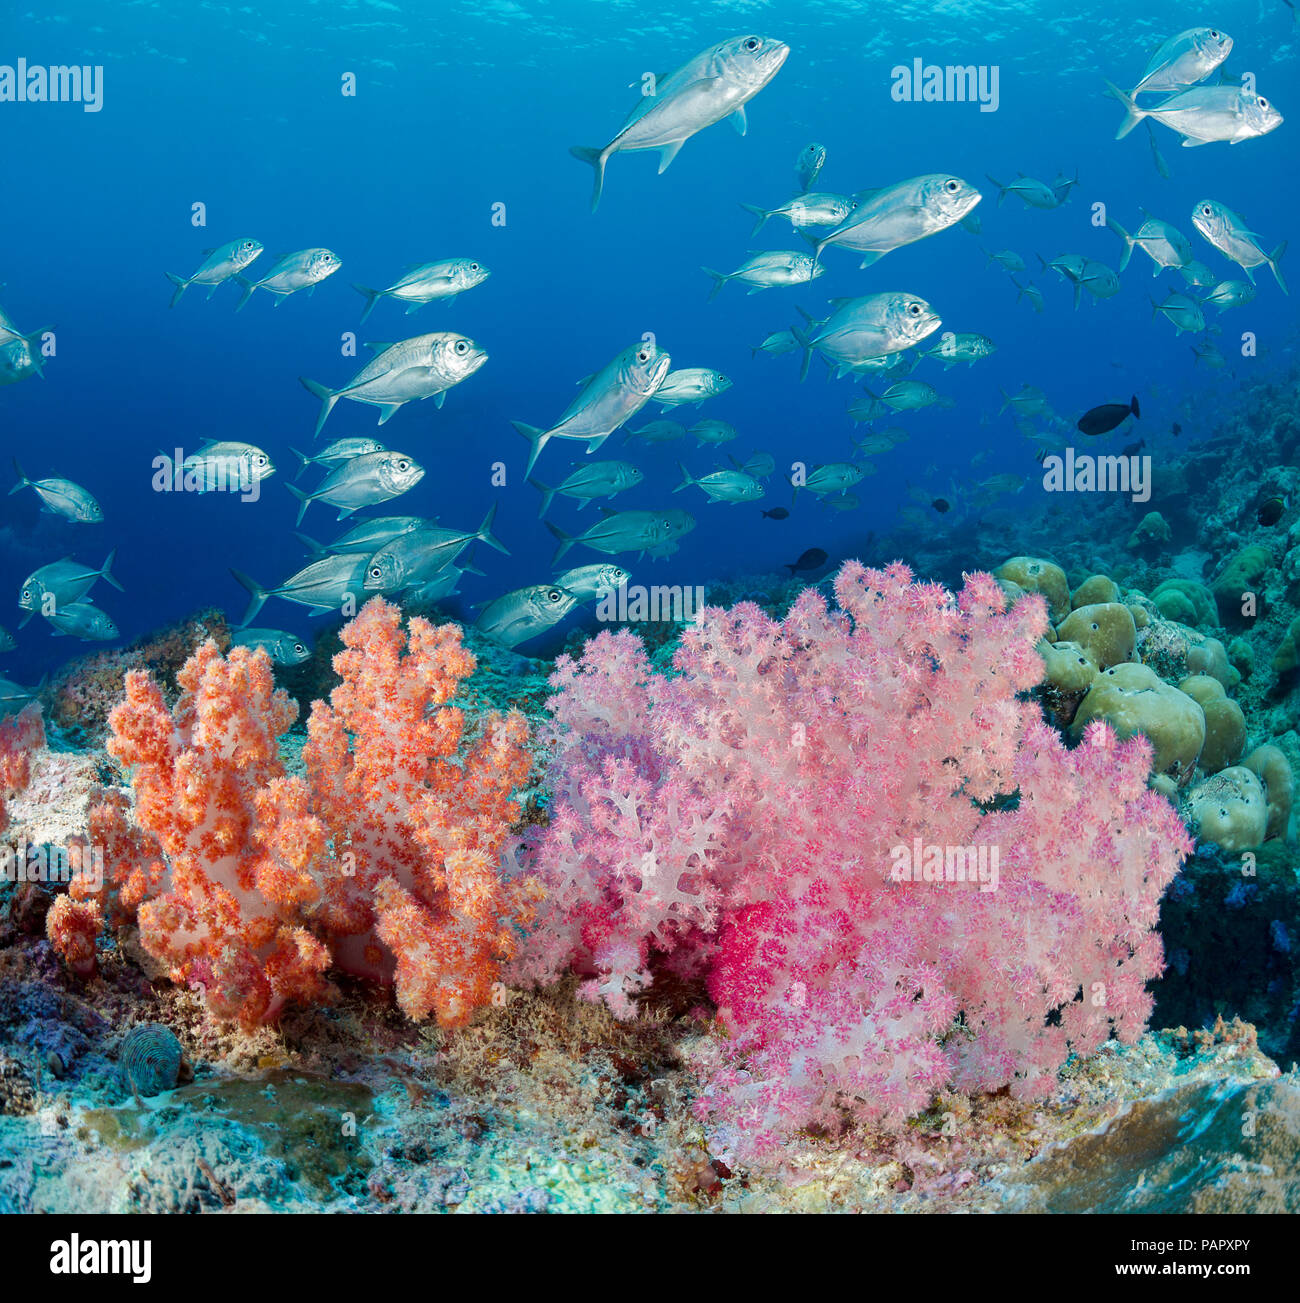 Un récif de corail mou alcyonarian avec scène et la scolarisation, les prises de thon obèse Caranx sexfasciatus, au large de l'île de Yap, Micronésie. Banque D'Images